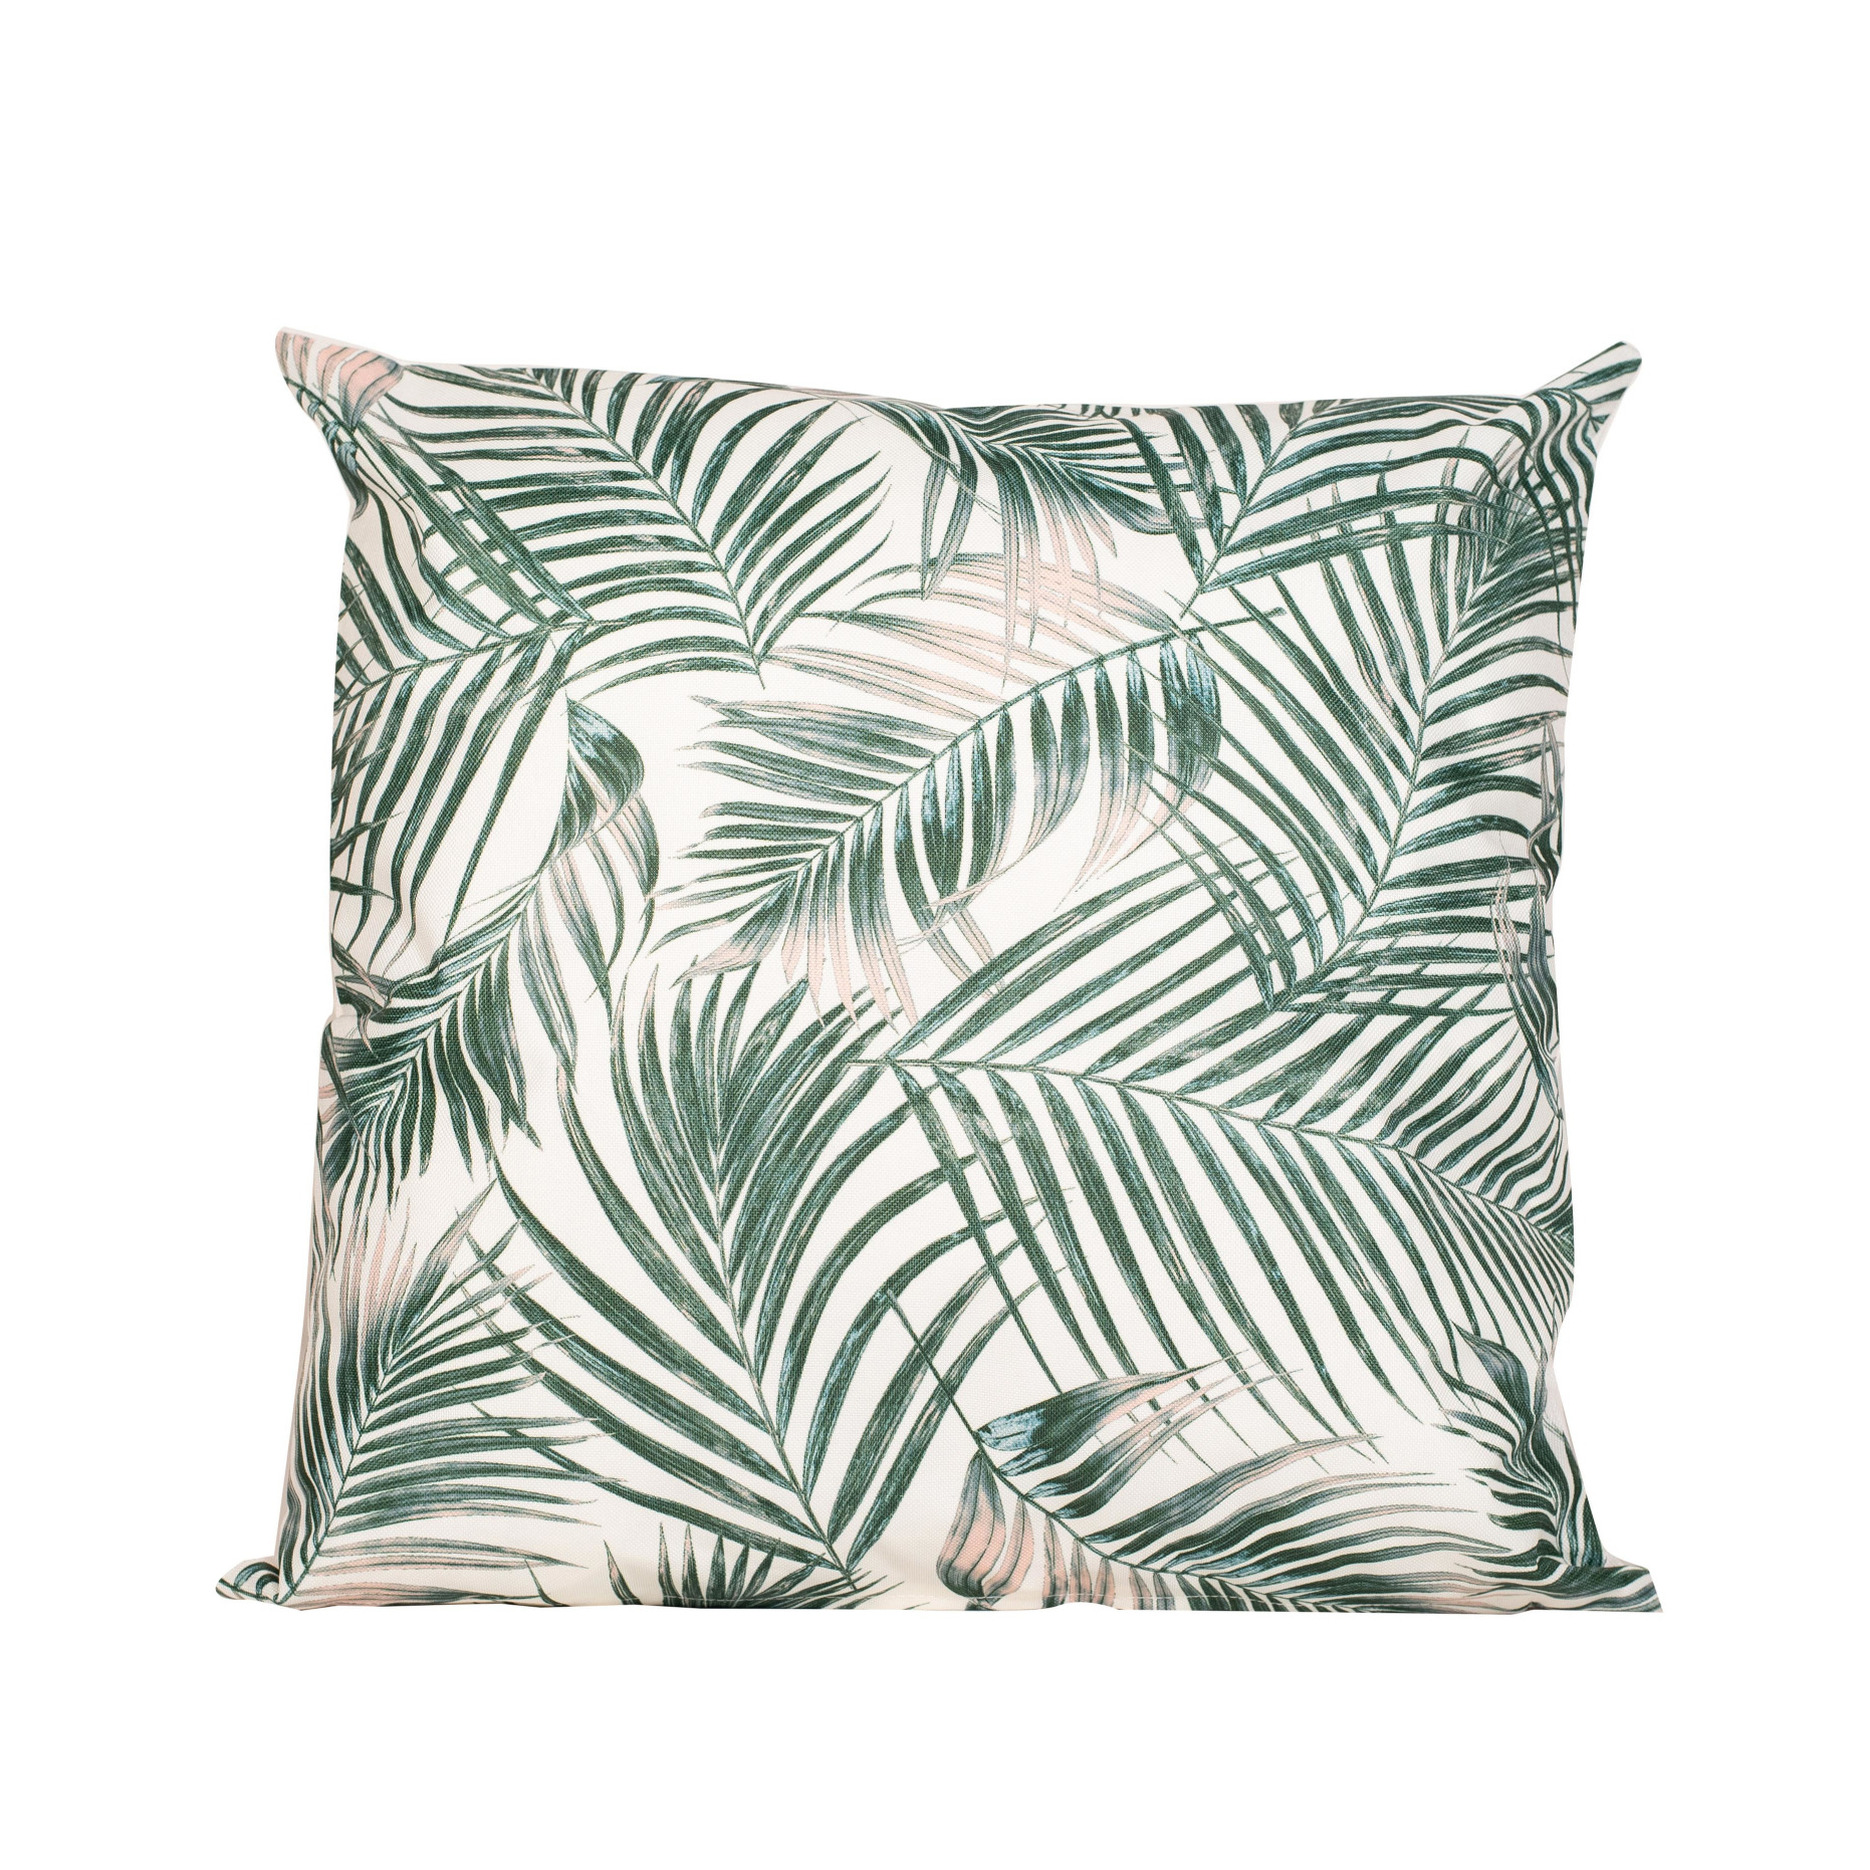 1x Bank-sier kussens met palm plant-bladeren print voor binnen en buiten 45 x 45 cm